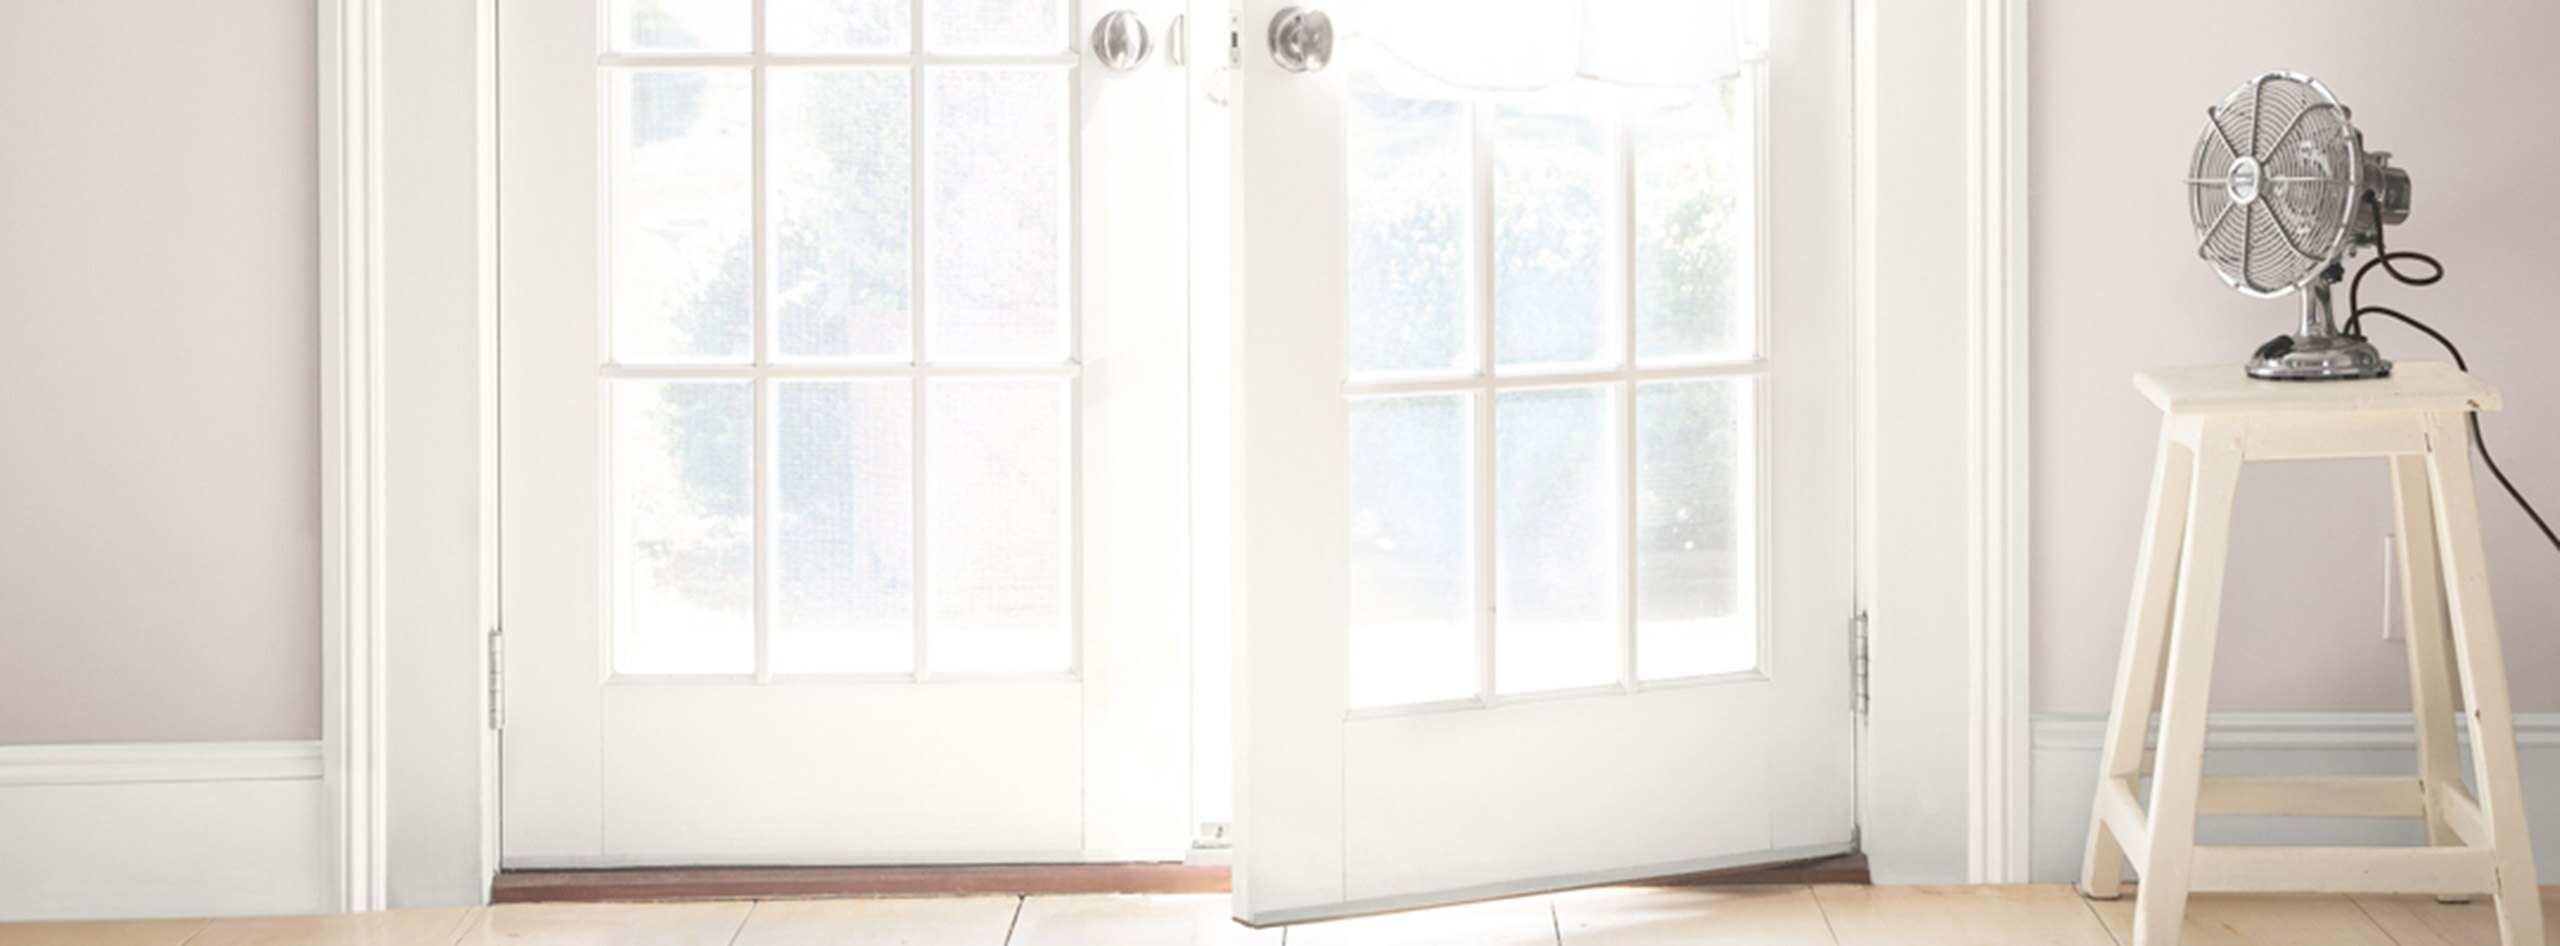 Des portes françaises peintes en blanc donnant sur une pièce d’un beige rosé. Un ventilateur est posé sur un tabouret blanc, et un manteau blanc boutonné est accroché à une porte.